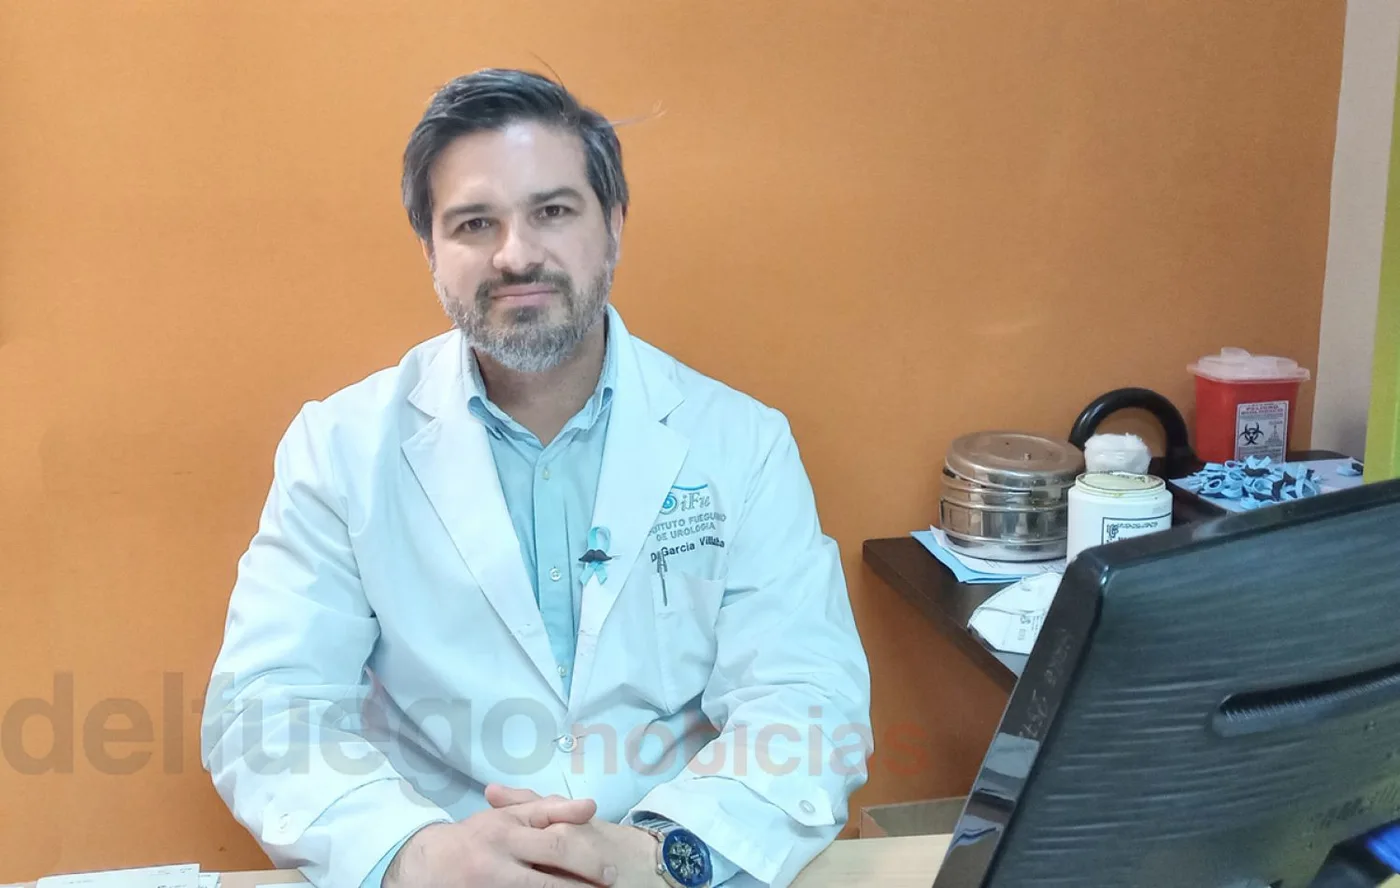 Dr. Javier García Villalba, Especialista en Cirugía General, Especialista en Urología, Andrología y Cirujano Laparoscopista quien también participa de